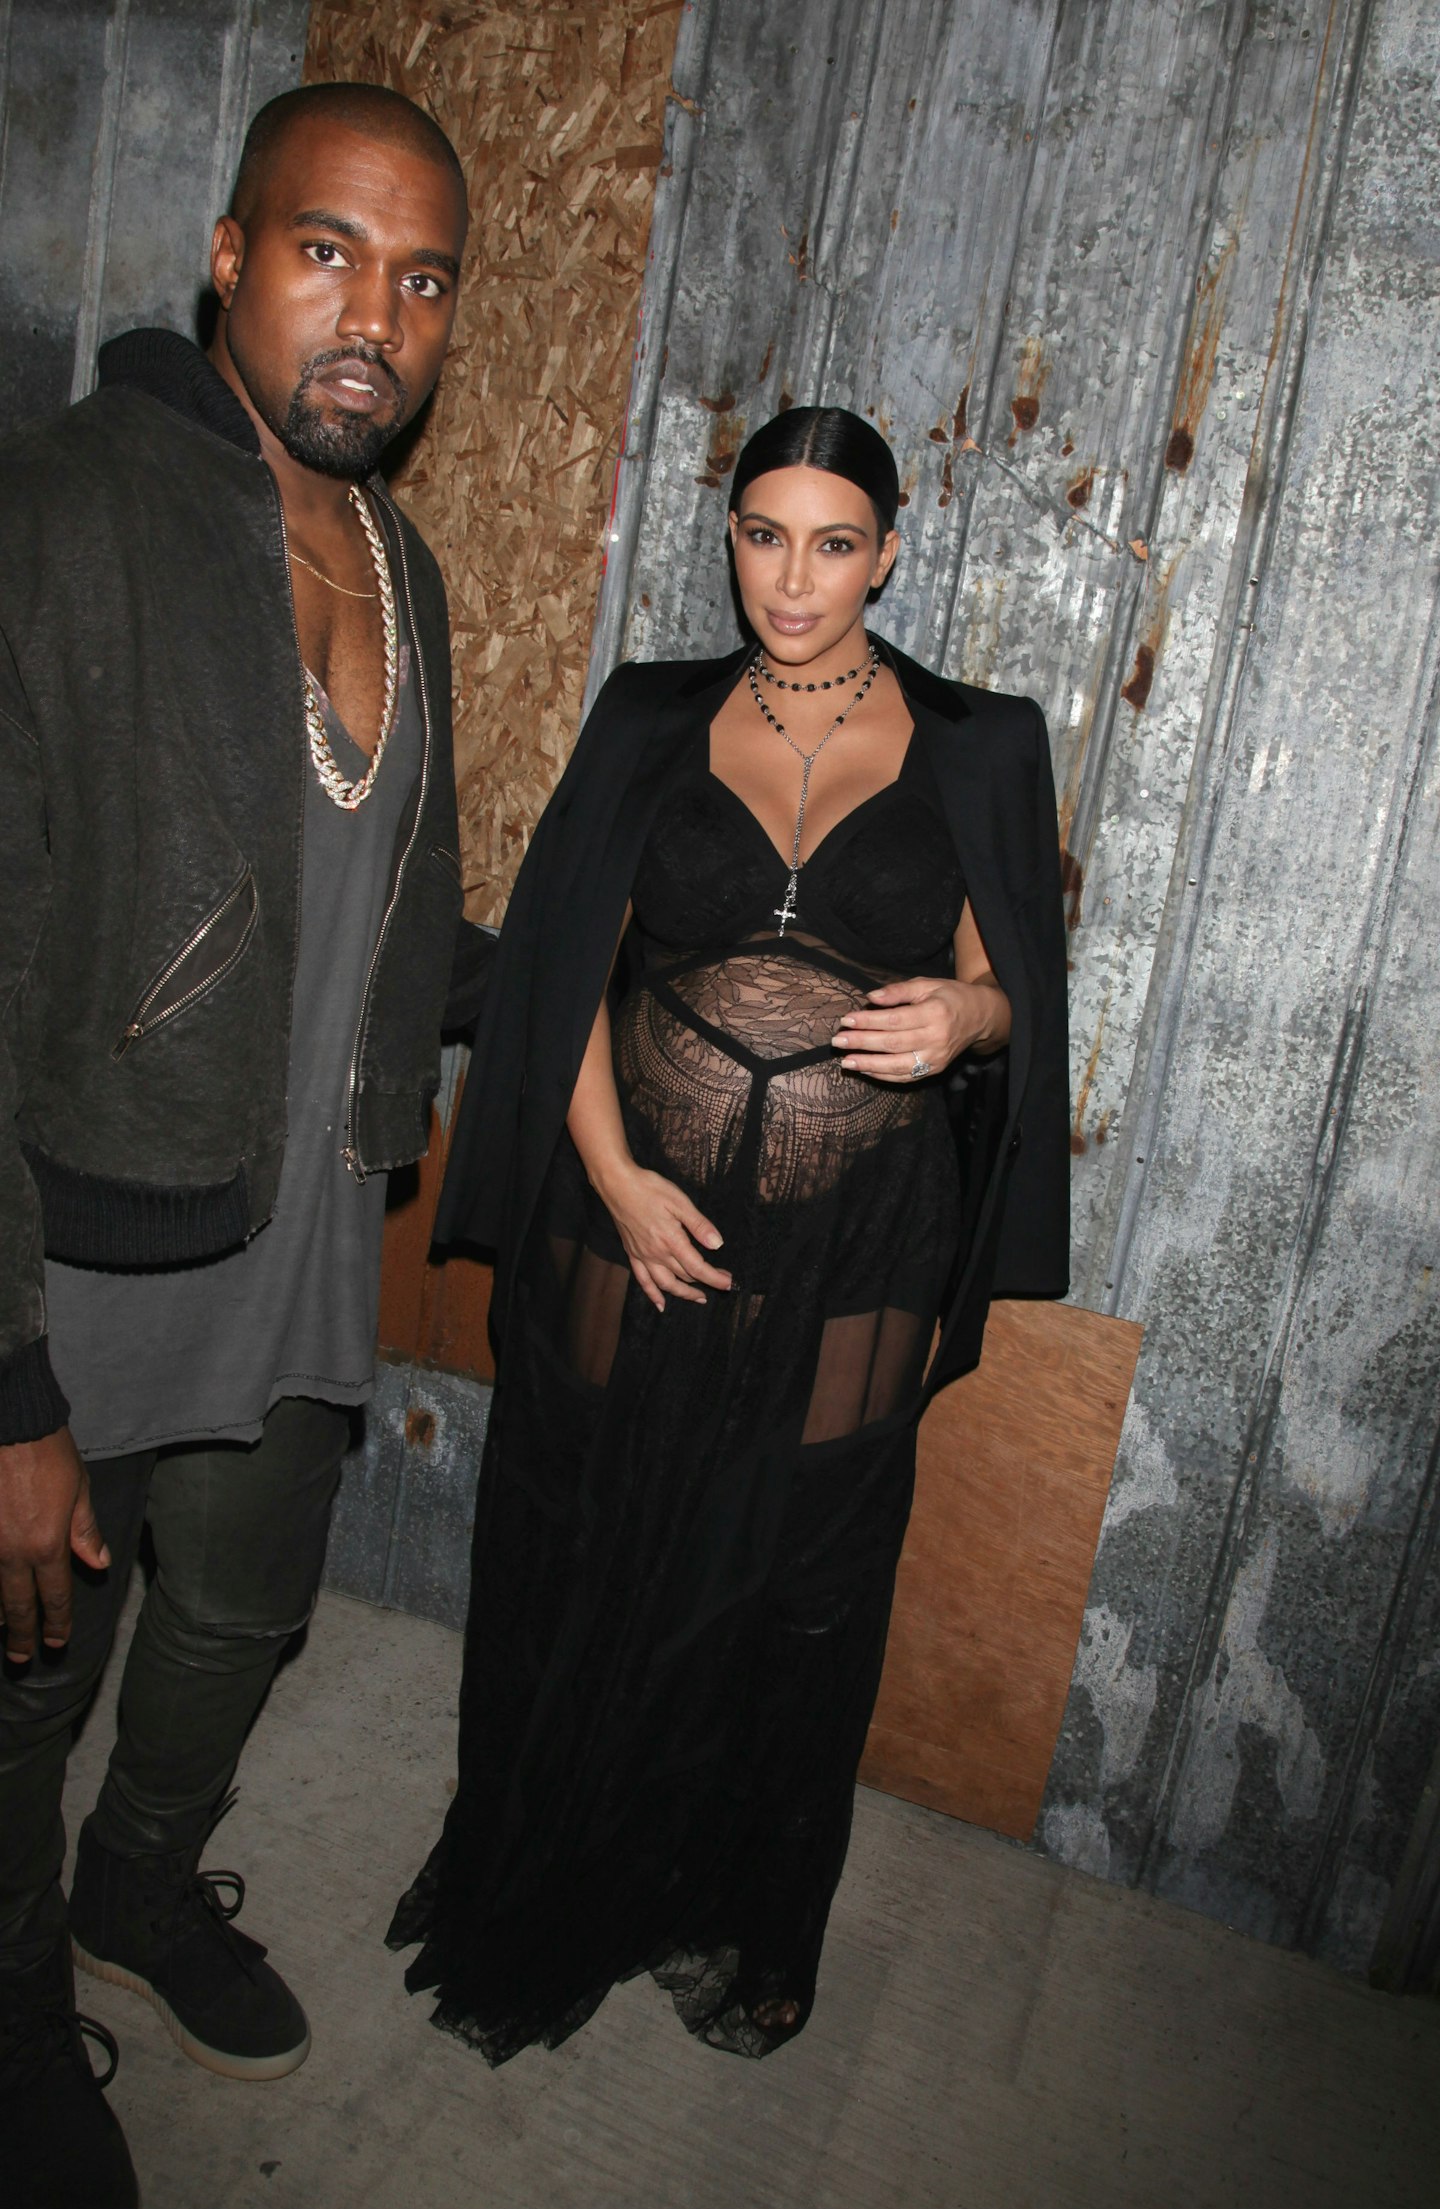 Kim and Kanye at Givenchy's show at NYFW this year.